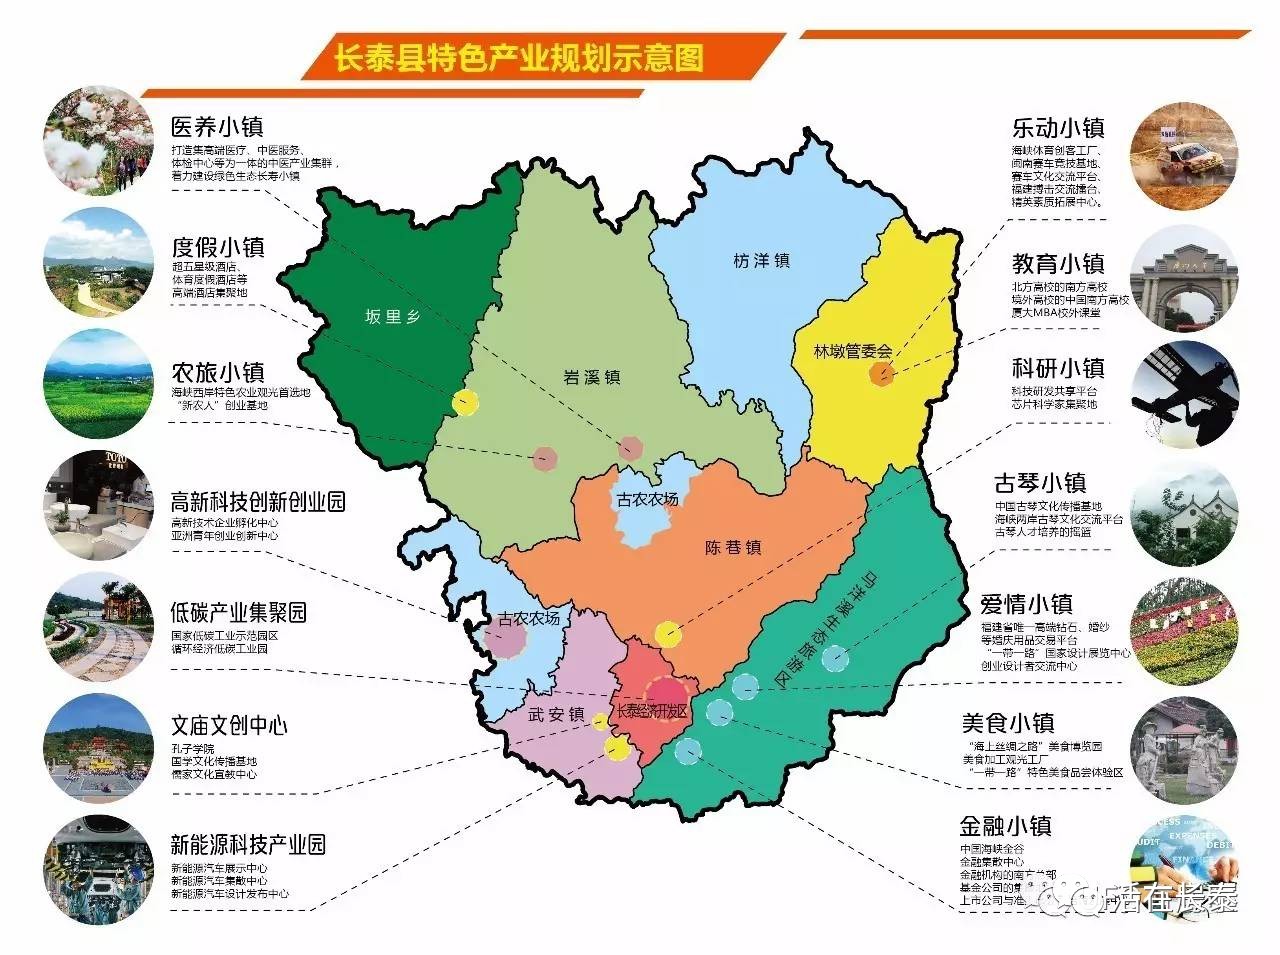 长泰县各乡镇分布图图片